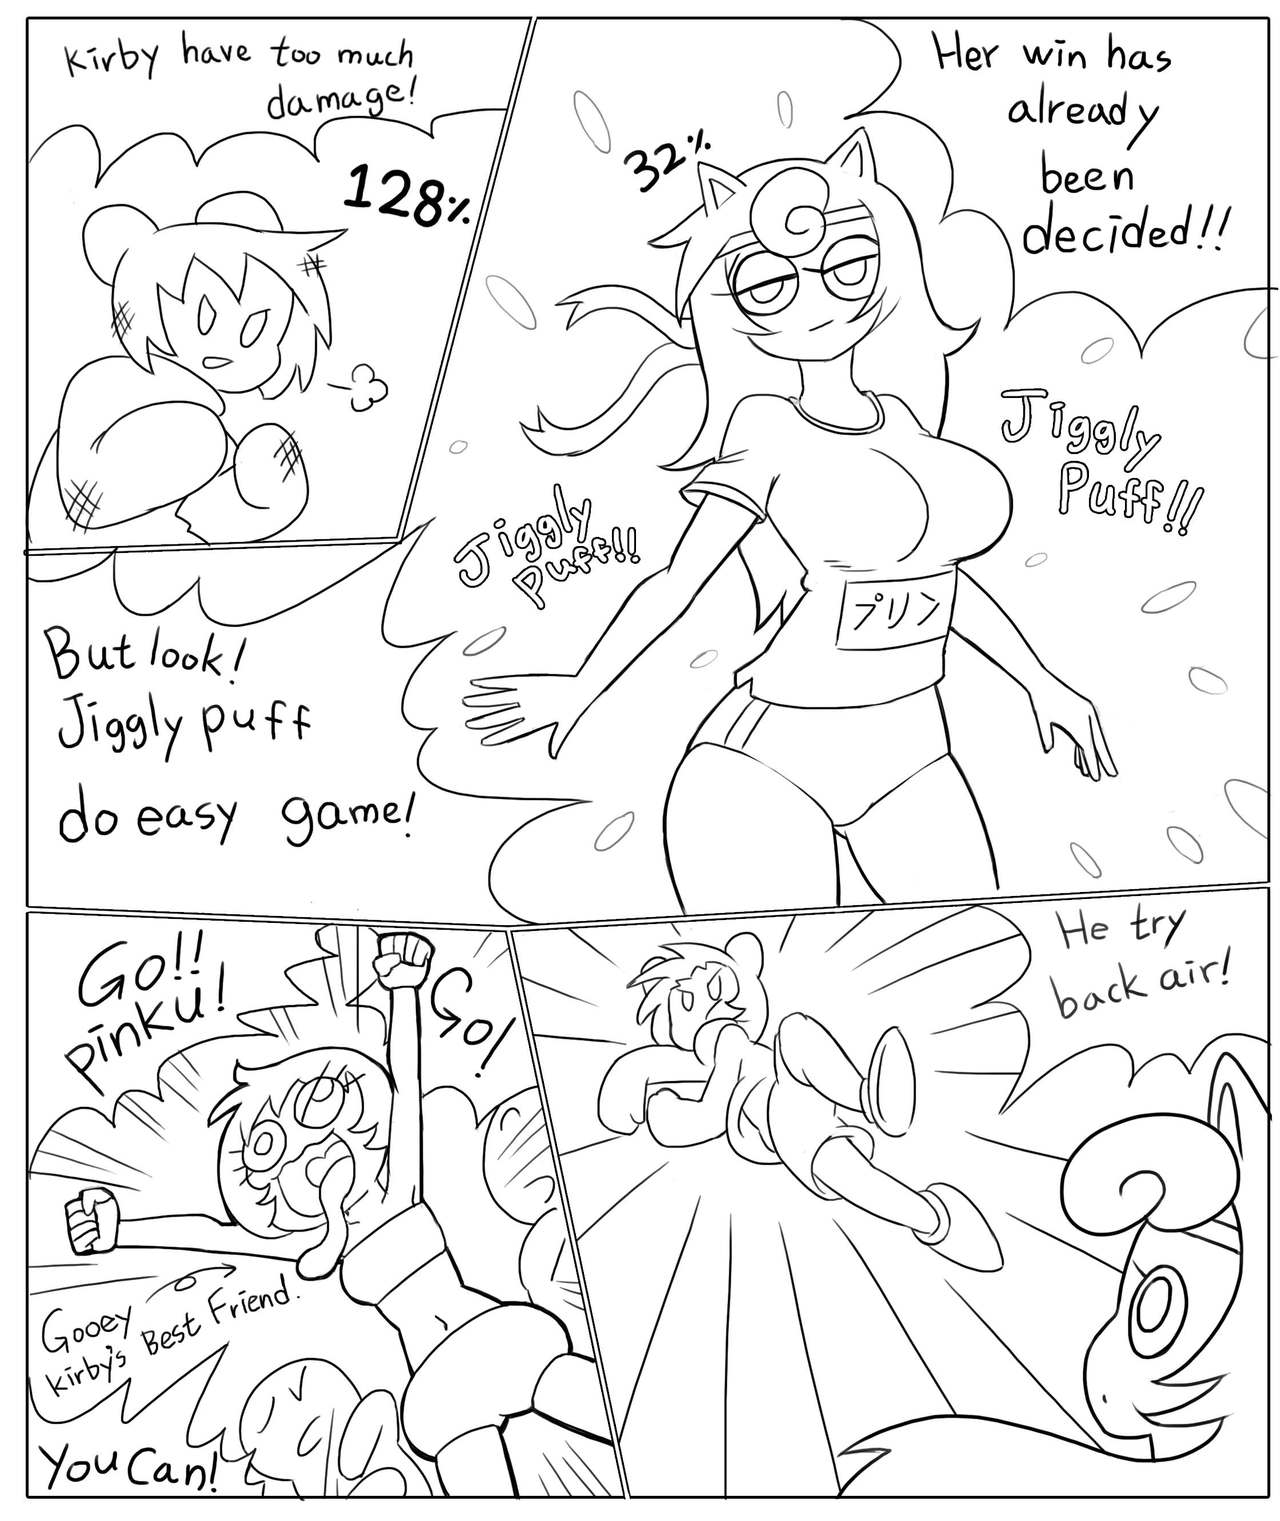 [Minus8] Kirby vs Jigglypuff 